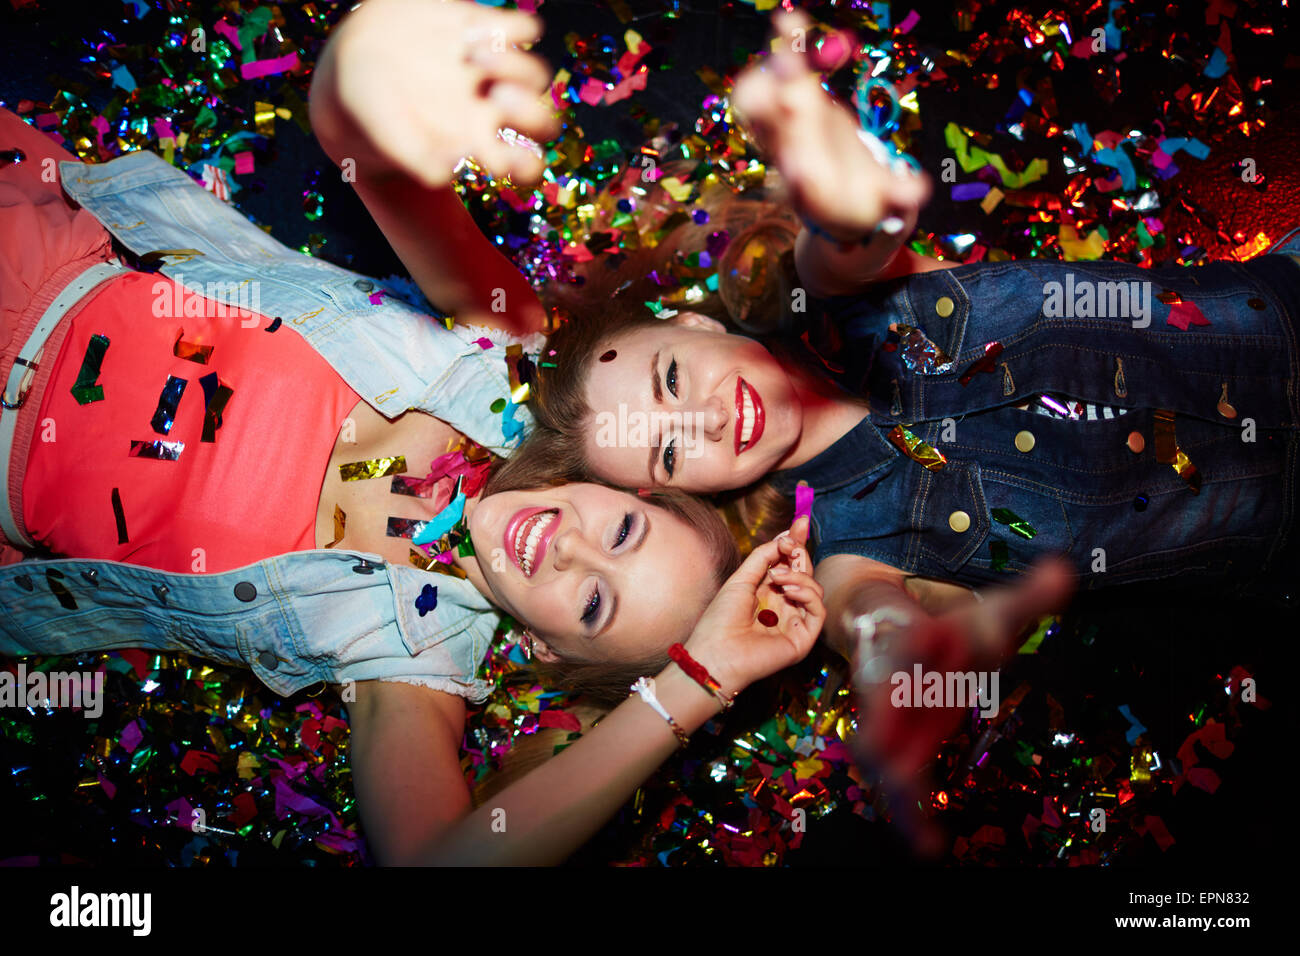 Zwei energetische Mädchen mit erhobenen Armen Blick in die Kamera in Nachtclub Stockfoto